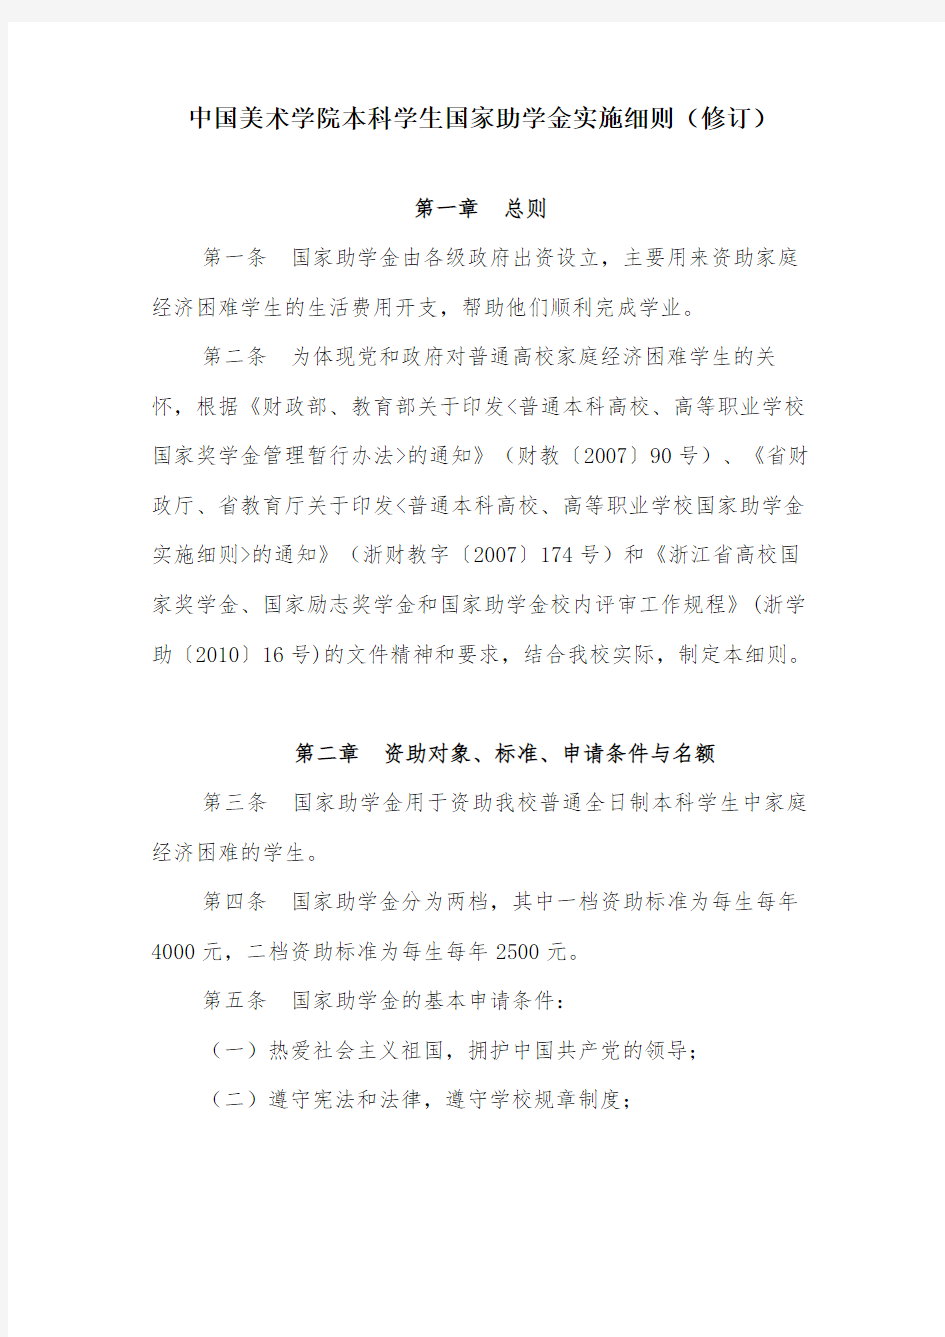 中国美术学院本科学生国家助学金实施细则(修订)